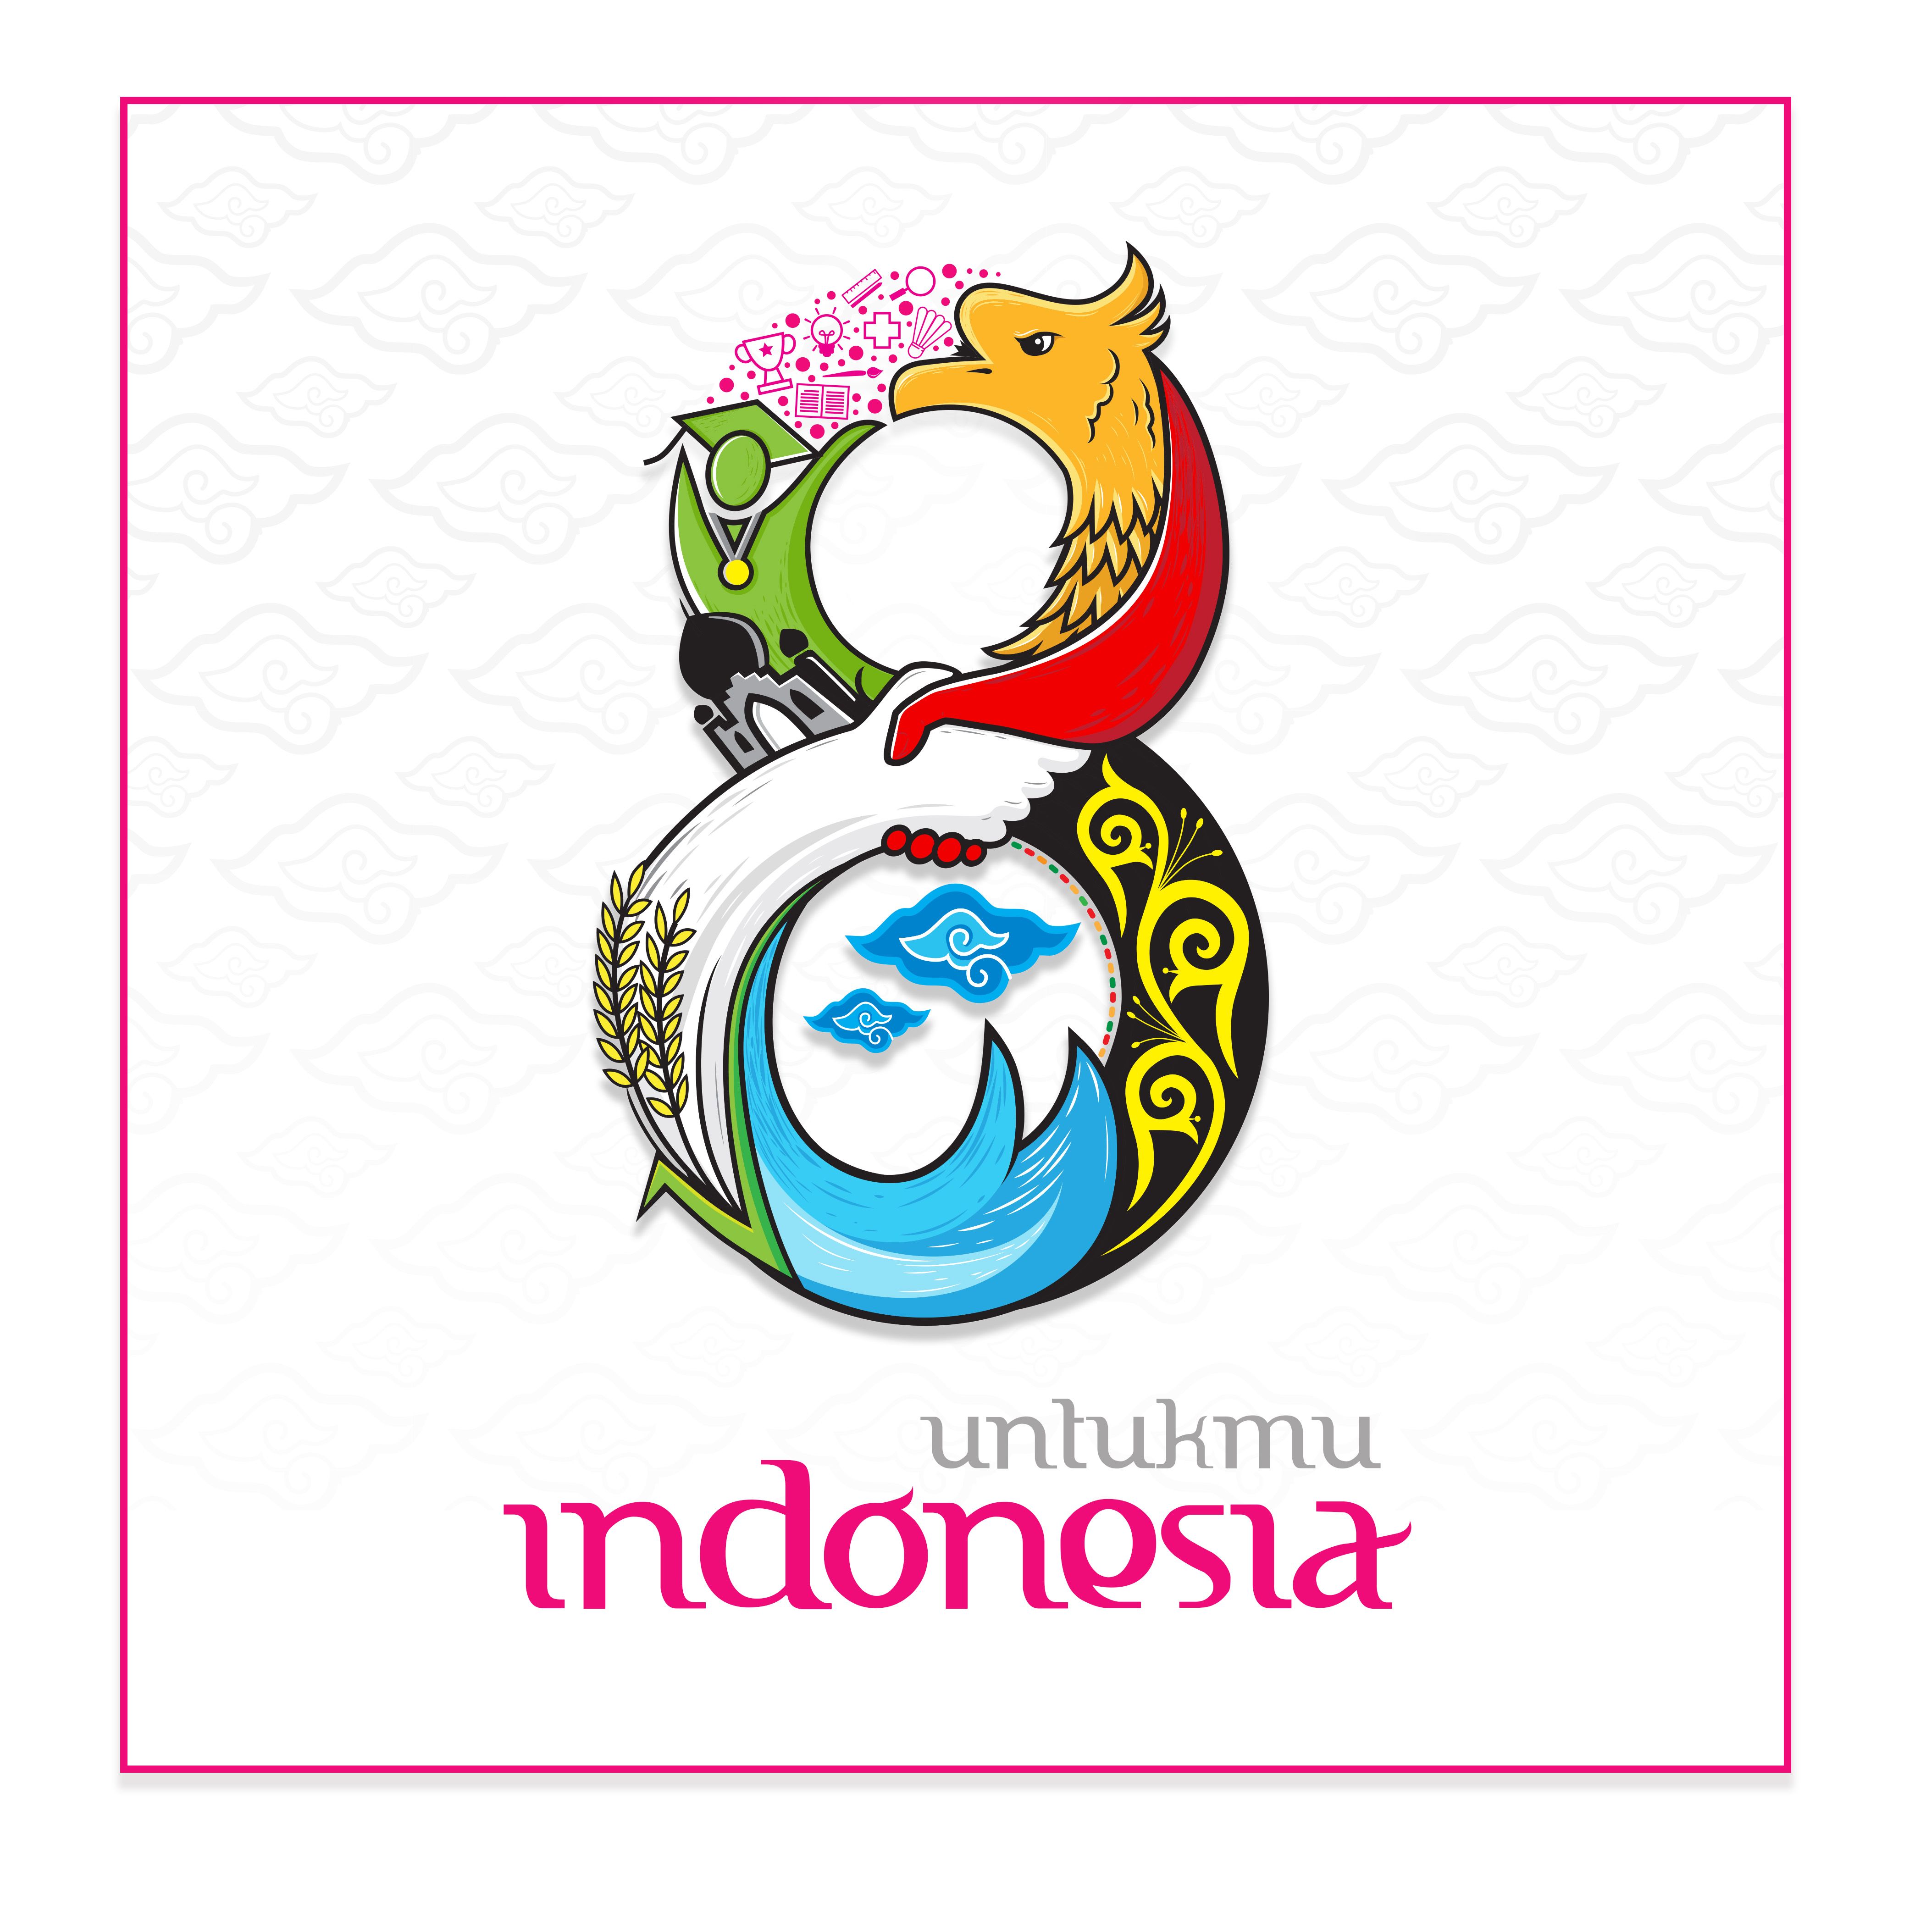 logo kontes keindahan angka delapan untuk indonesia 2018 2a45b6c6a32d8